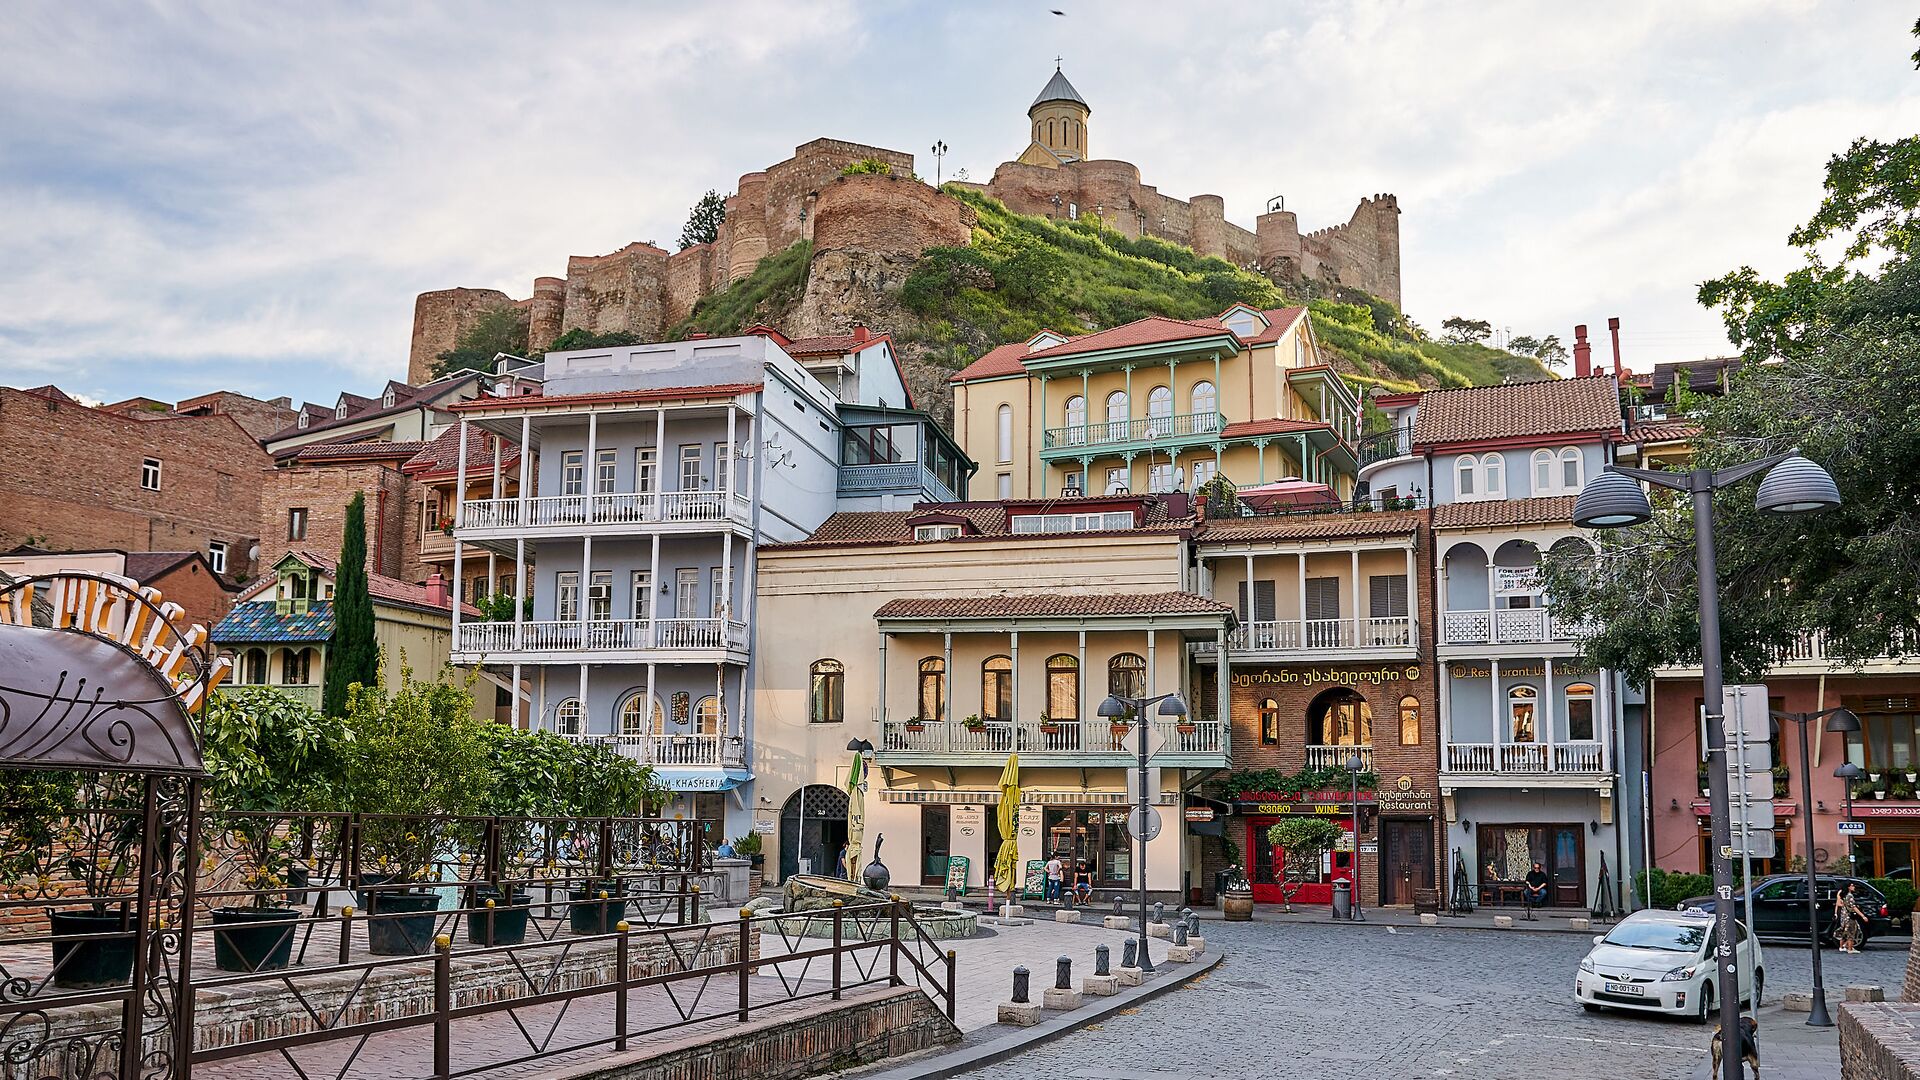 Район Абанотубани и вид на крепость Нарикала и старые дома в историческом центре Тбилиси - Sputnik Грузия, 1920, 02.06.2021